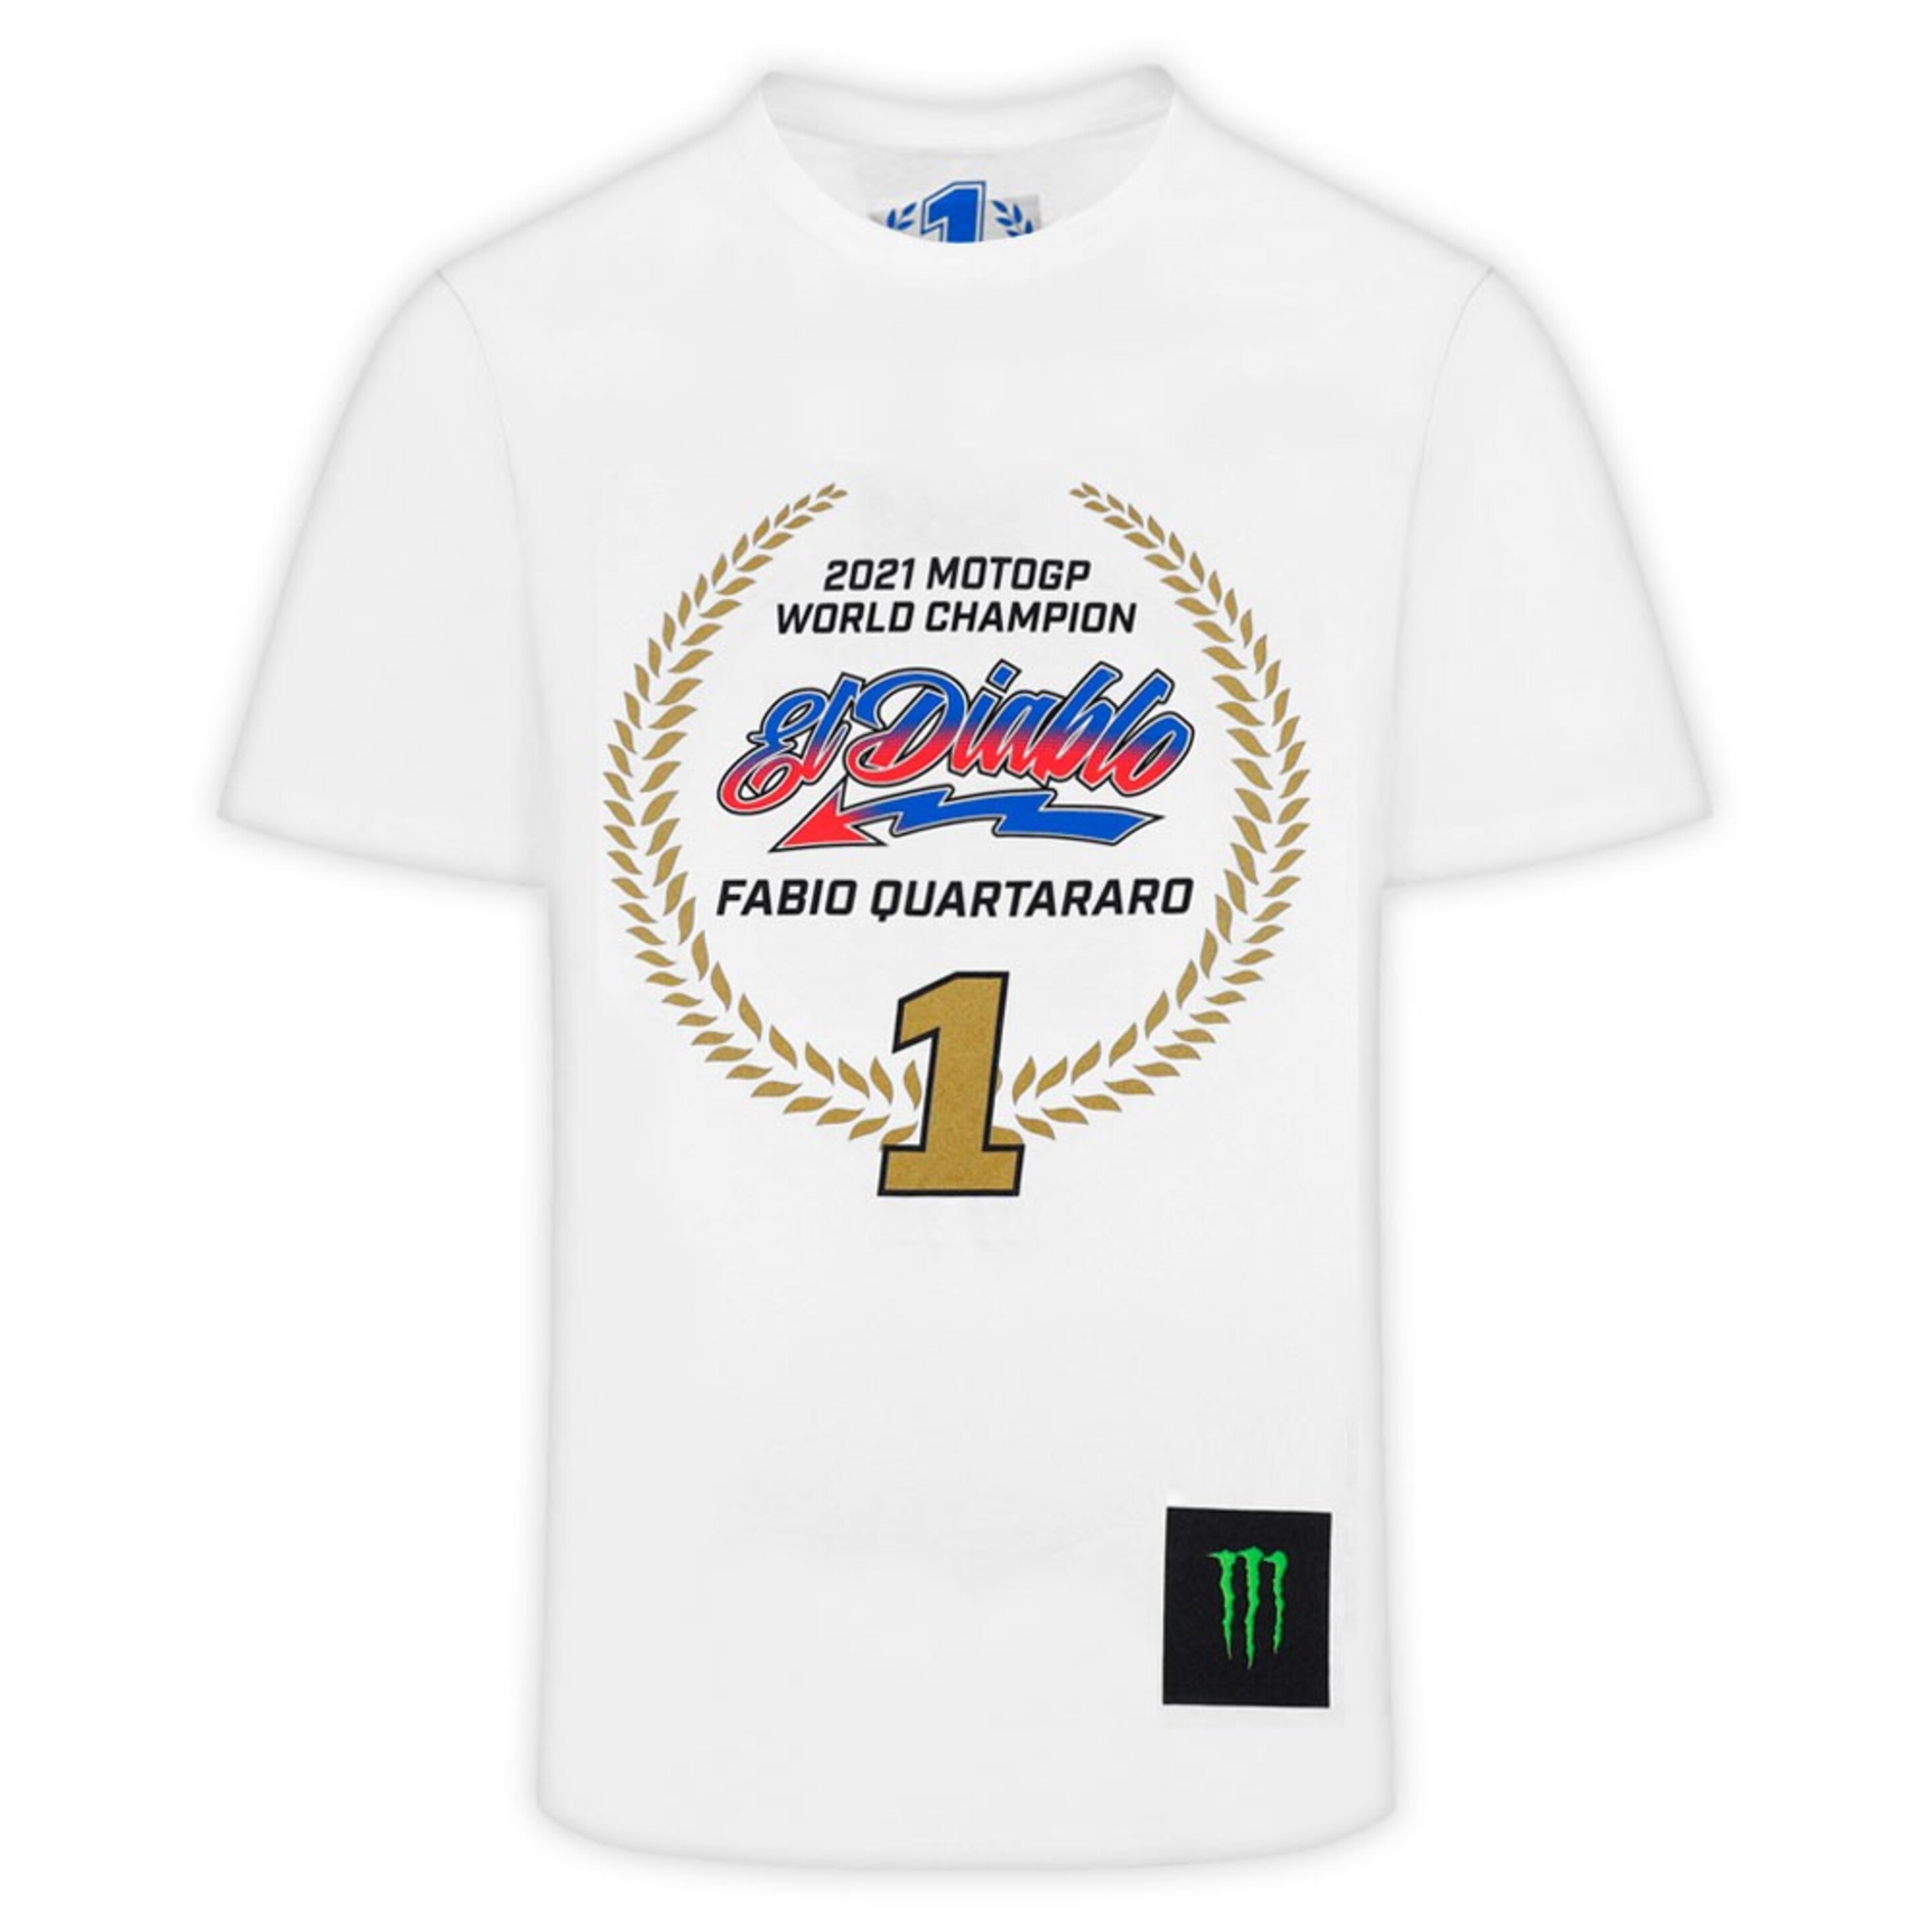 Camiseta Fabio Quartararo Campeón Del Mundo Motogp 2021